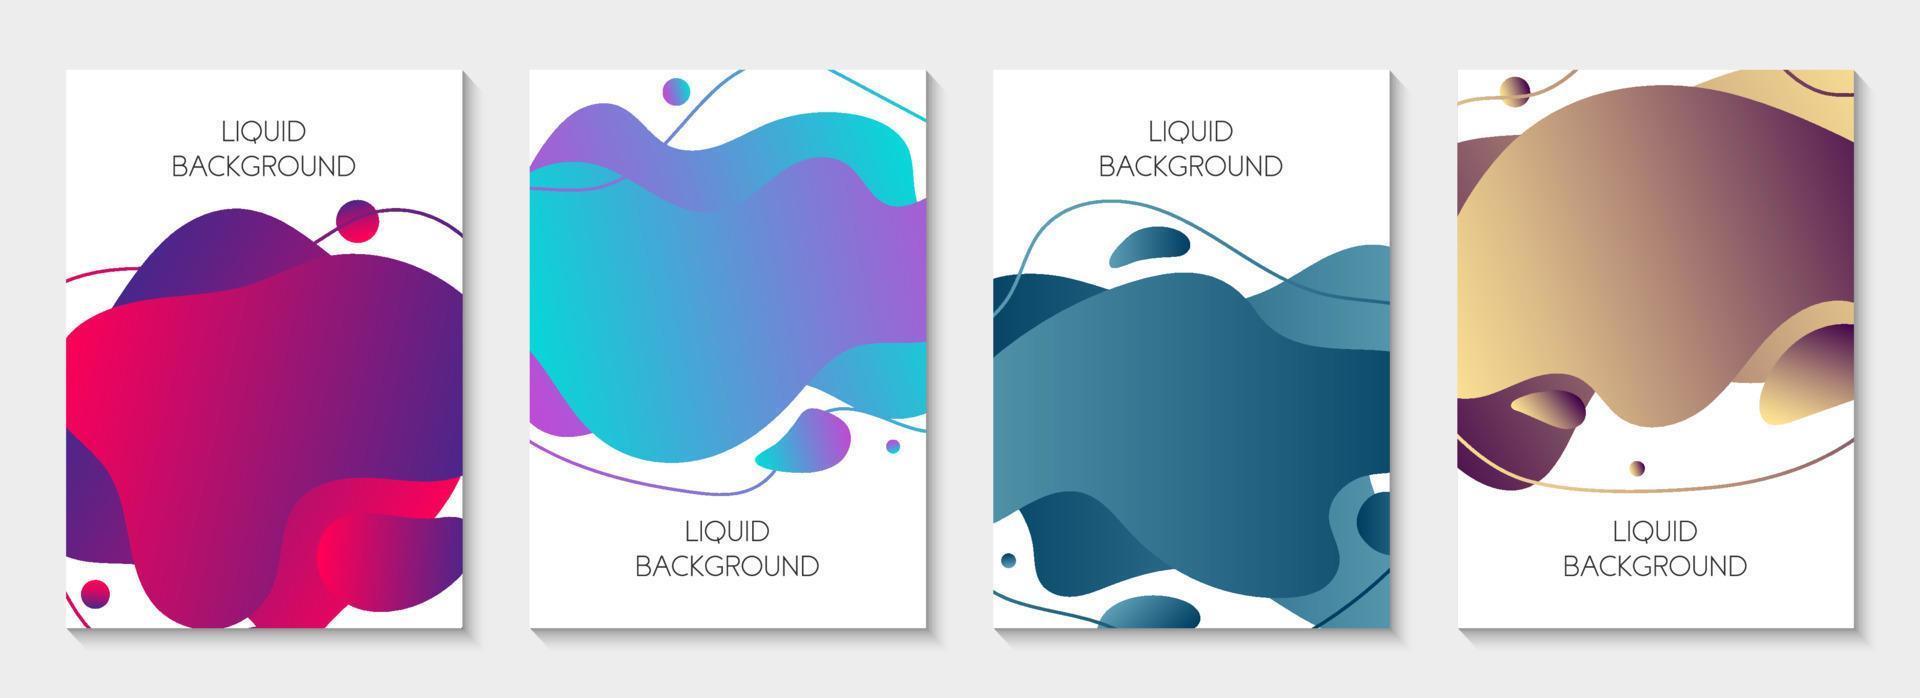 conjunto de 4 banners líquidos gráficos modernos abstratos. ondas dinâmicas formas fluidas de cores diferentes. modelos isolados com formas líquidas fluindo. para a oferta especial, folheto ou apresentação. vetor